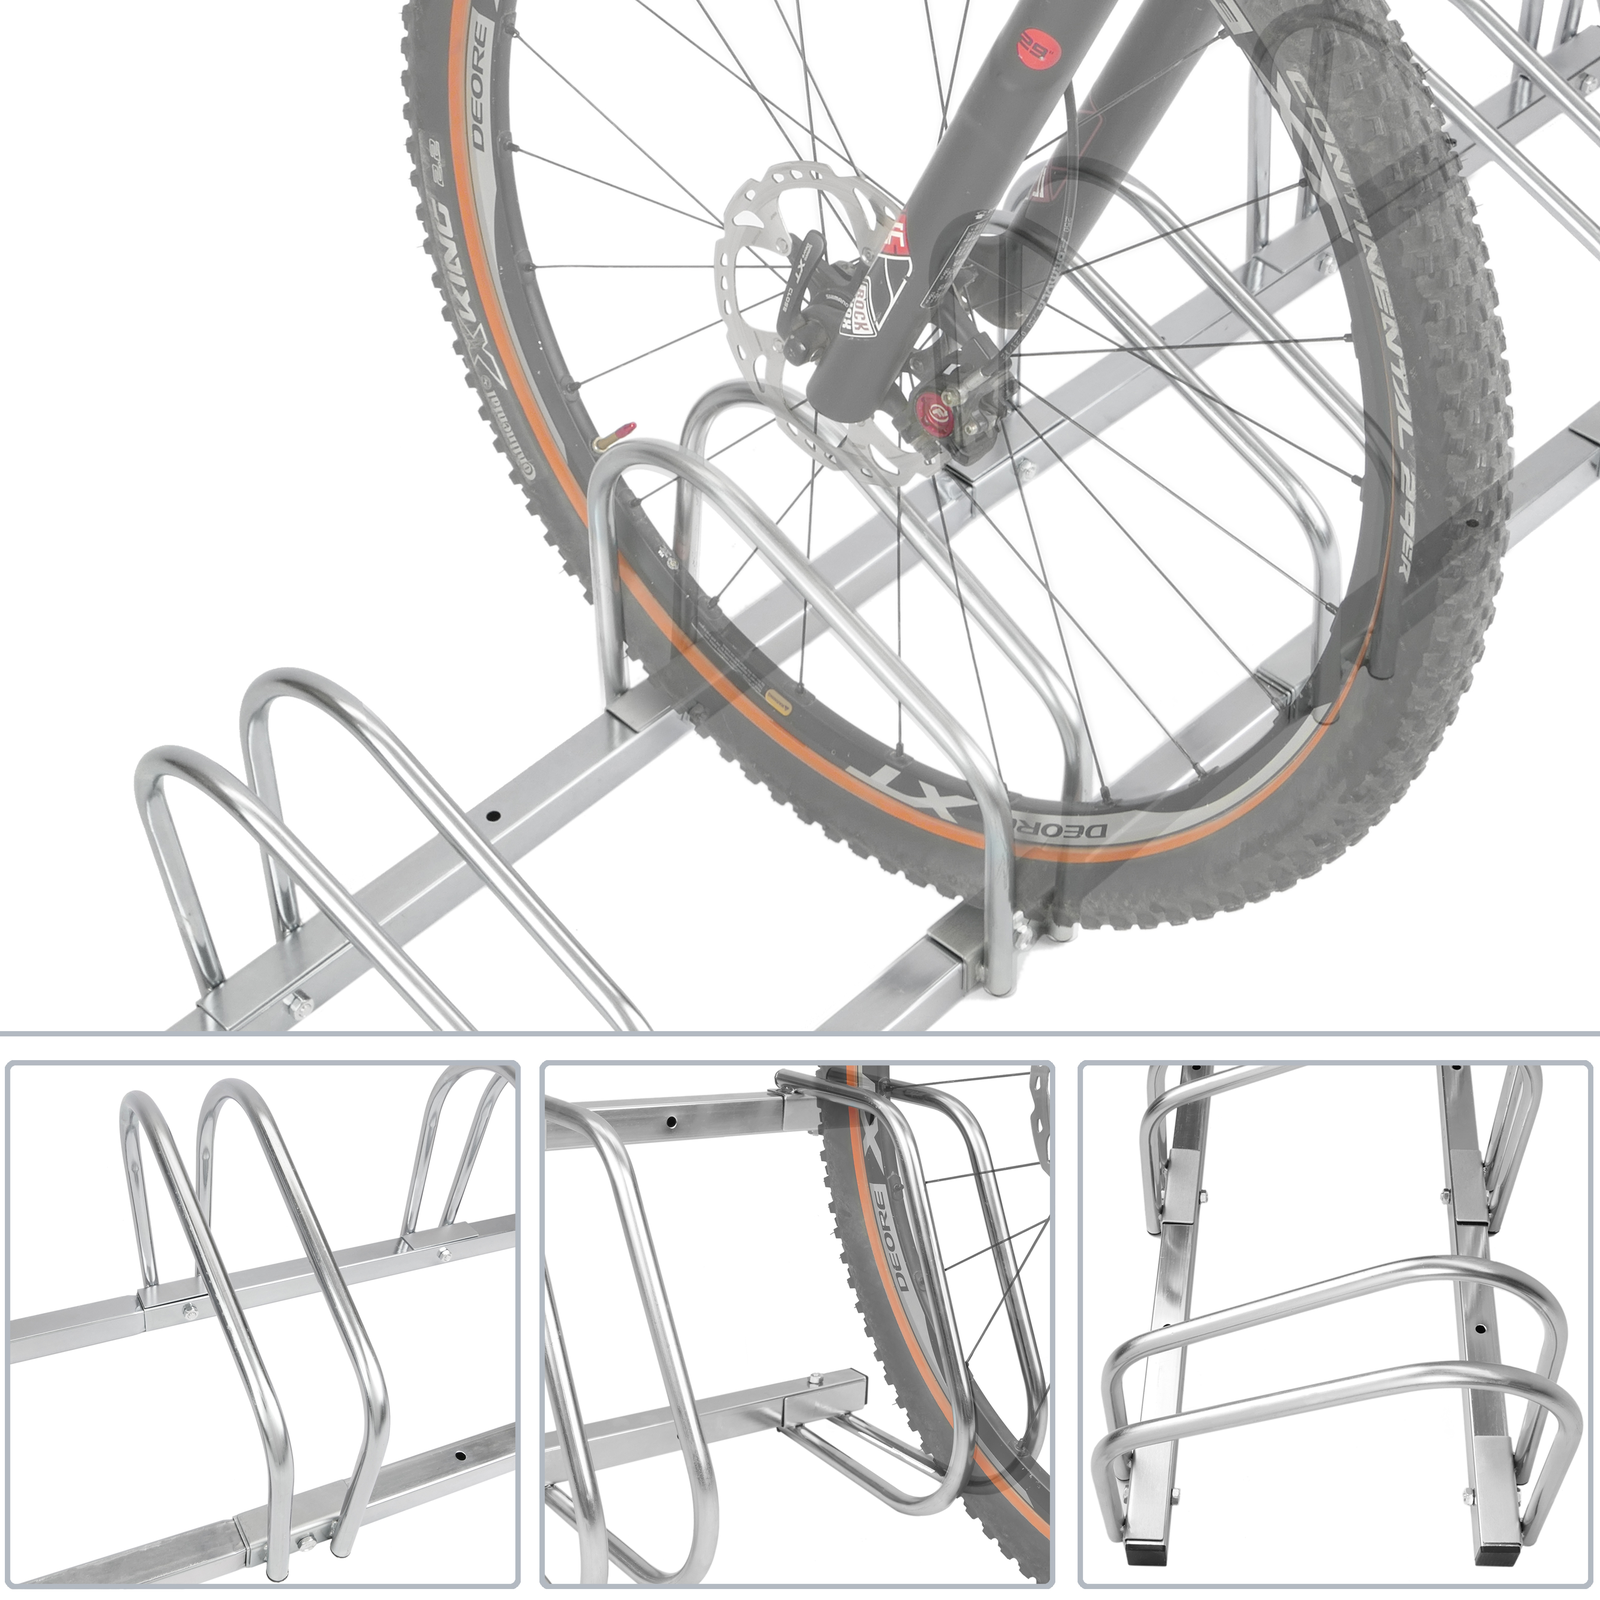 Soporte metálico para bicicleta de suelo plegable y ajustable distribuido  por CABLEMATIC ® 